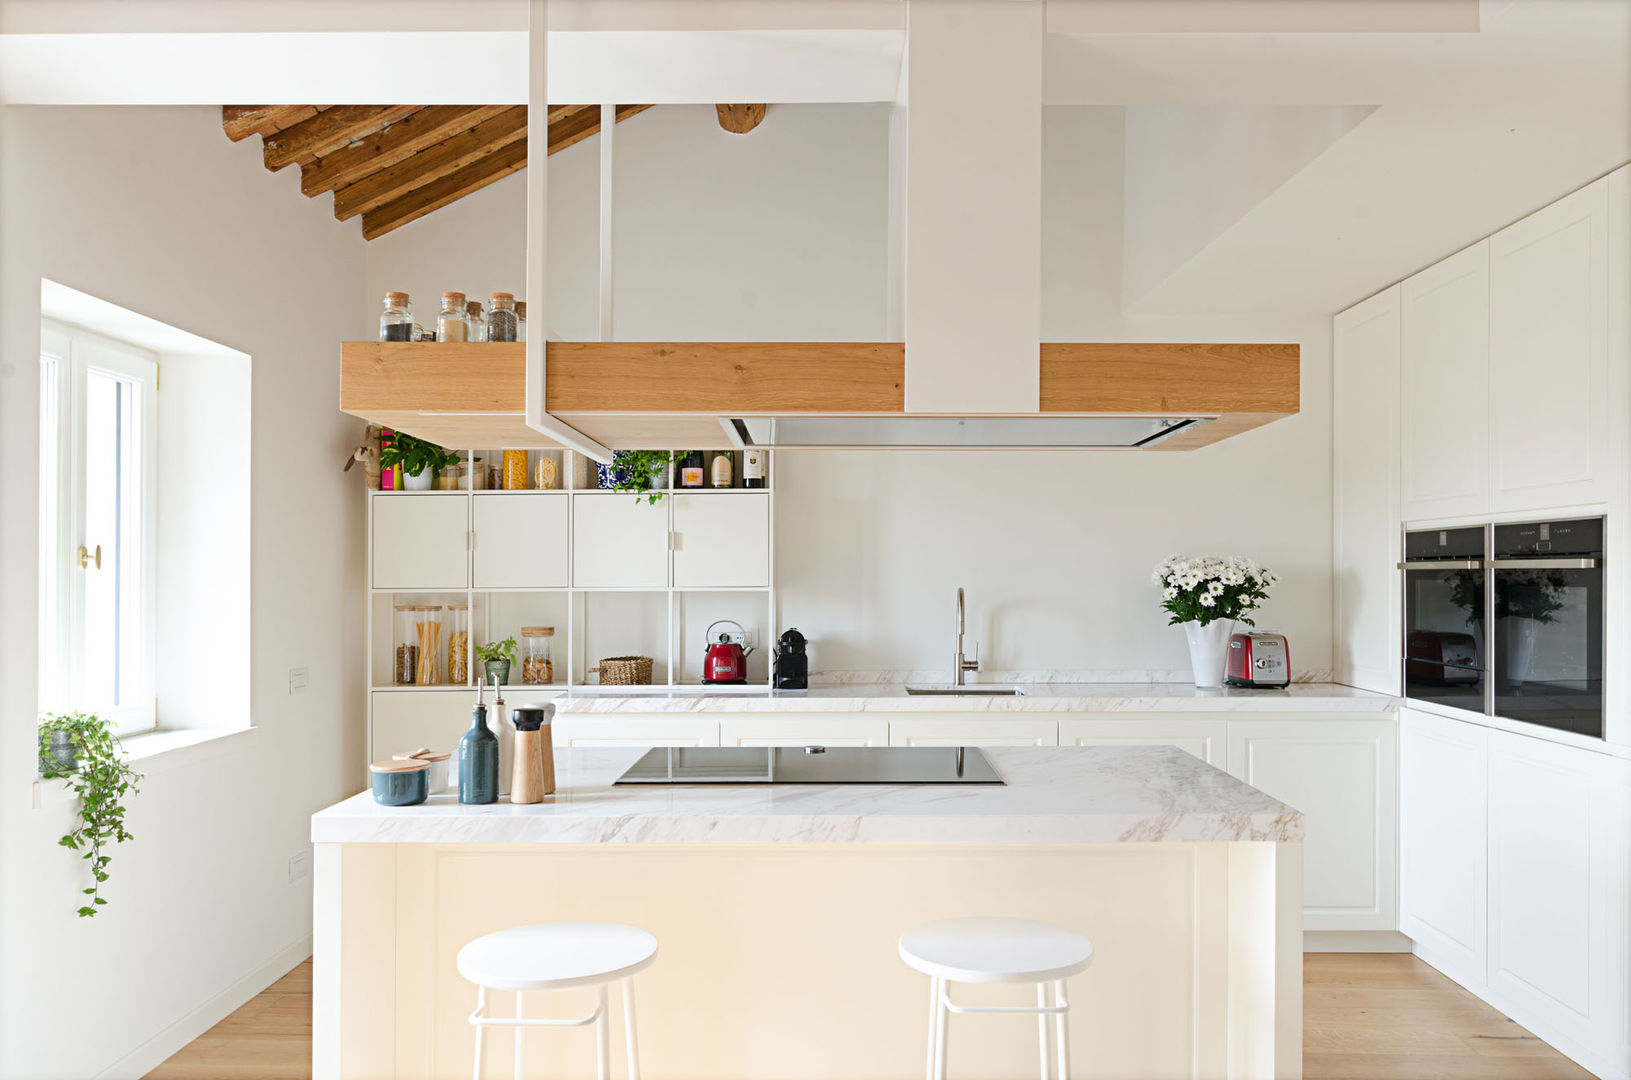 Attico RG - appartamento in un palazzo di fine '800, locatelli pepato locatelli pepato Modern kitchen Wood Wood effect